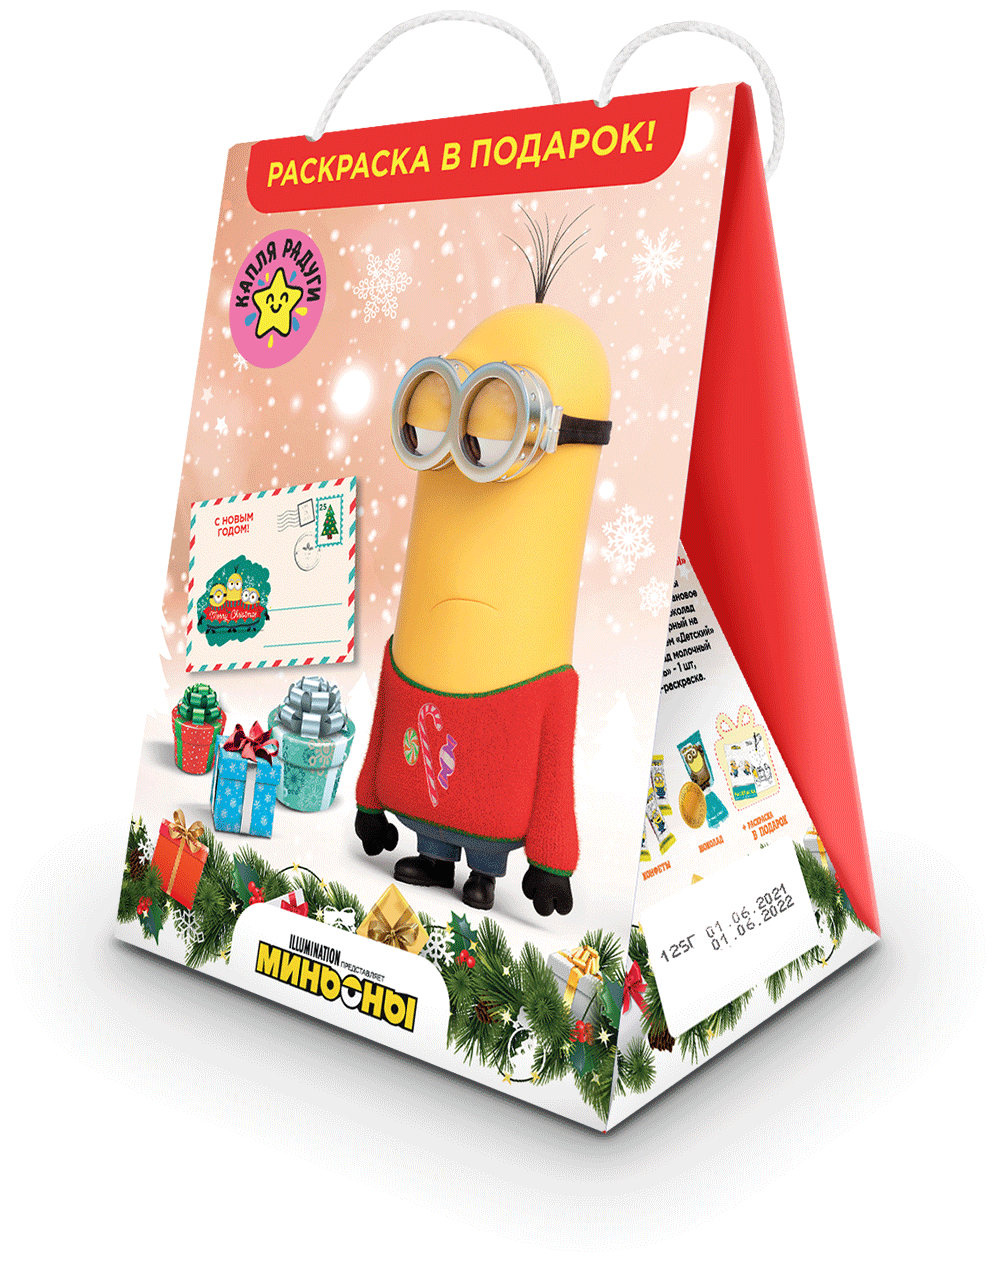 Детский подарочный набор конфет и шоколада "Миньоны ", сладкий новогодний подарок с сюрпризом раскраской, 125 г - фотография № 2